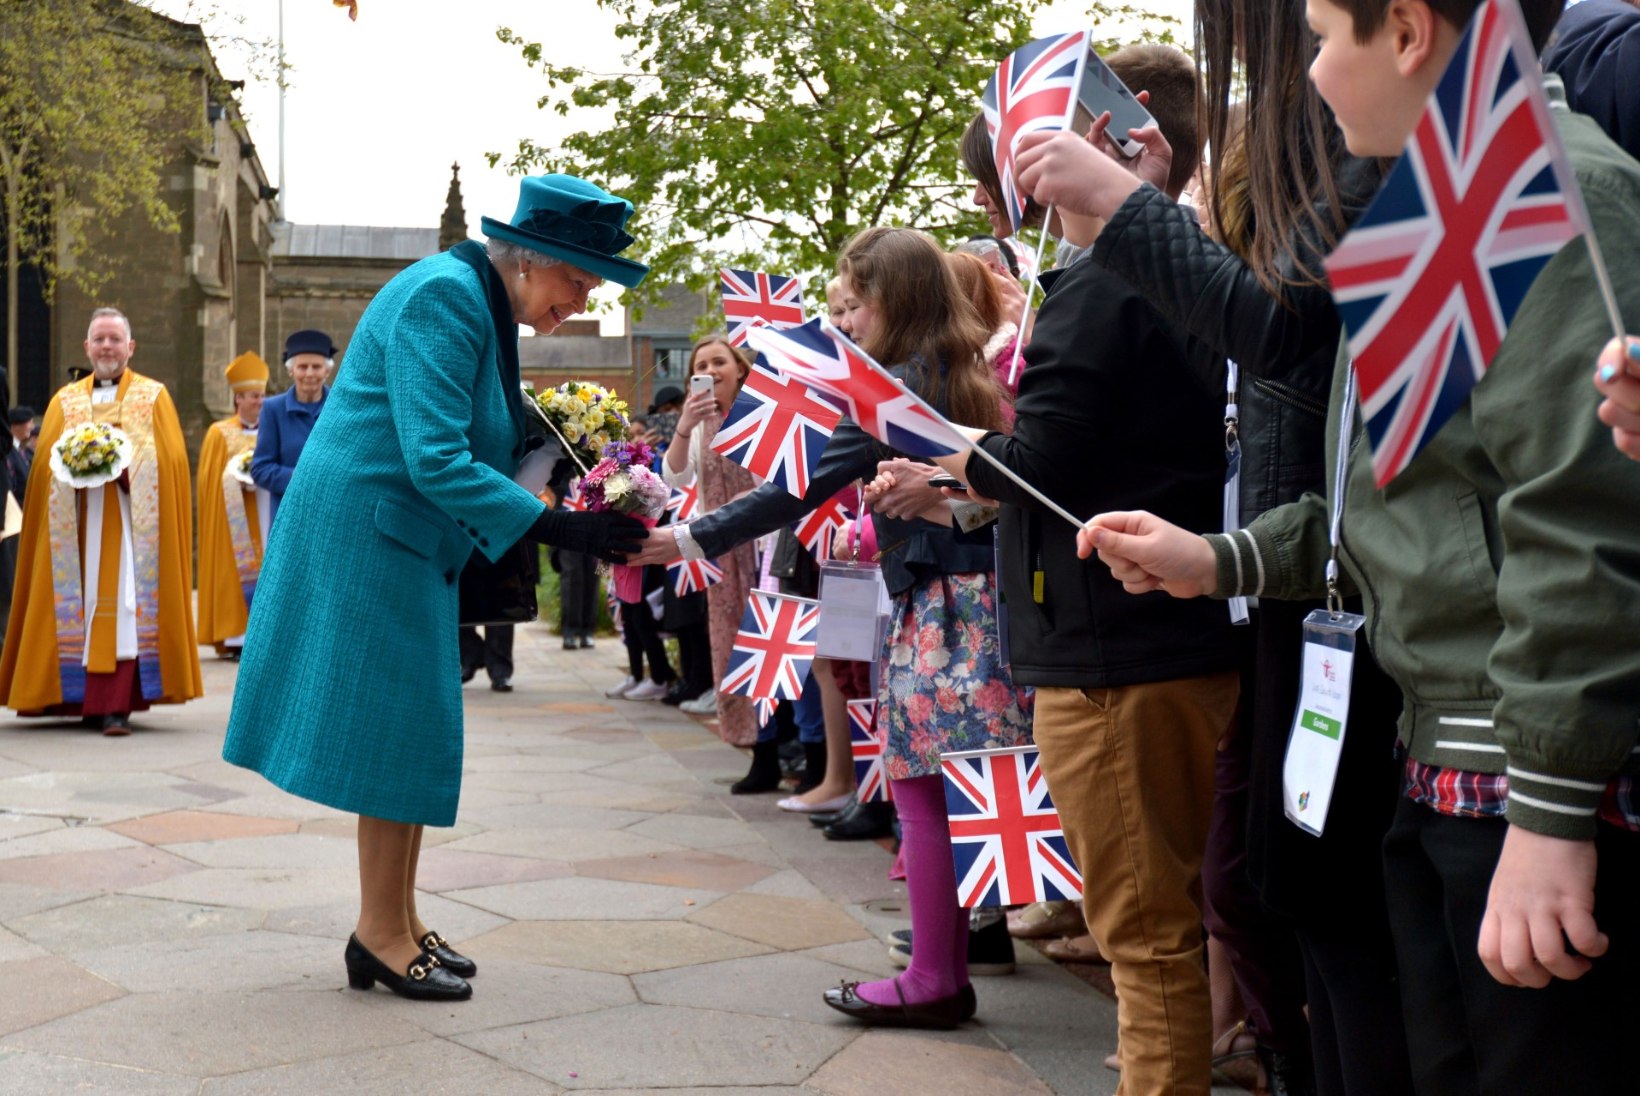 PALJU ÕNNE! Kuninganna Elizabeth II tähistab täna 91. sünnipäeva